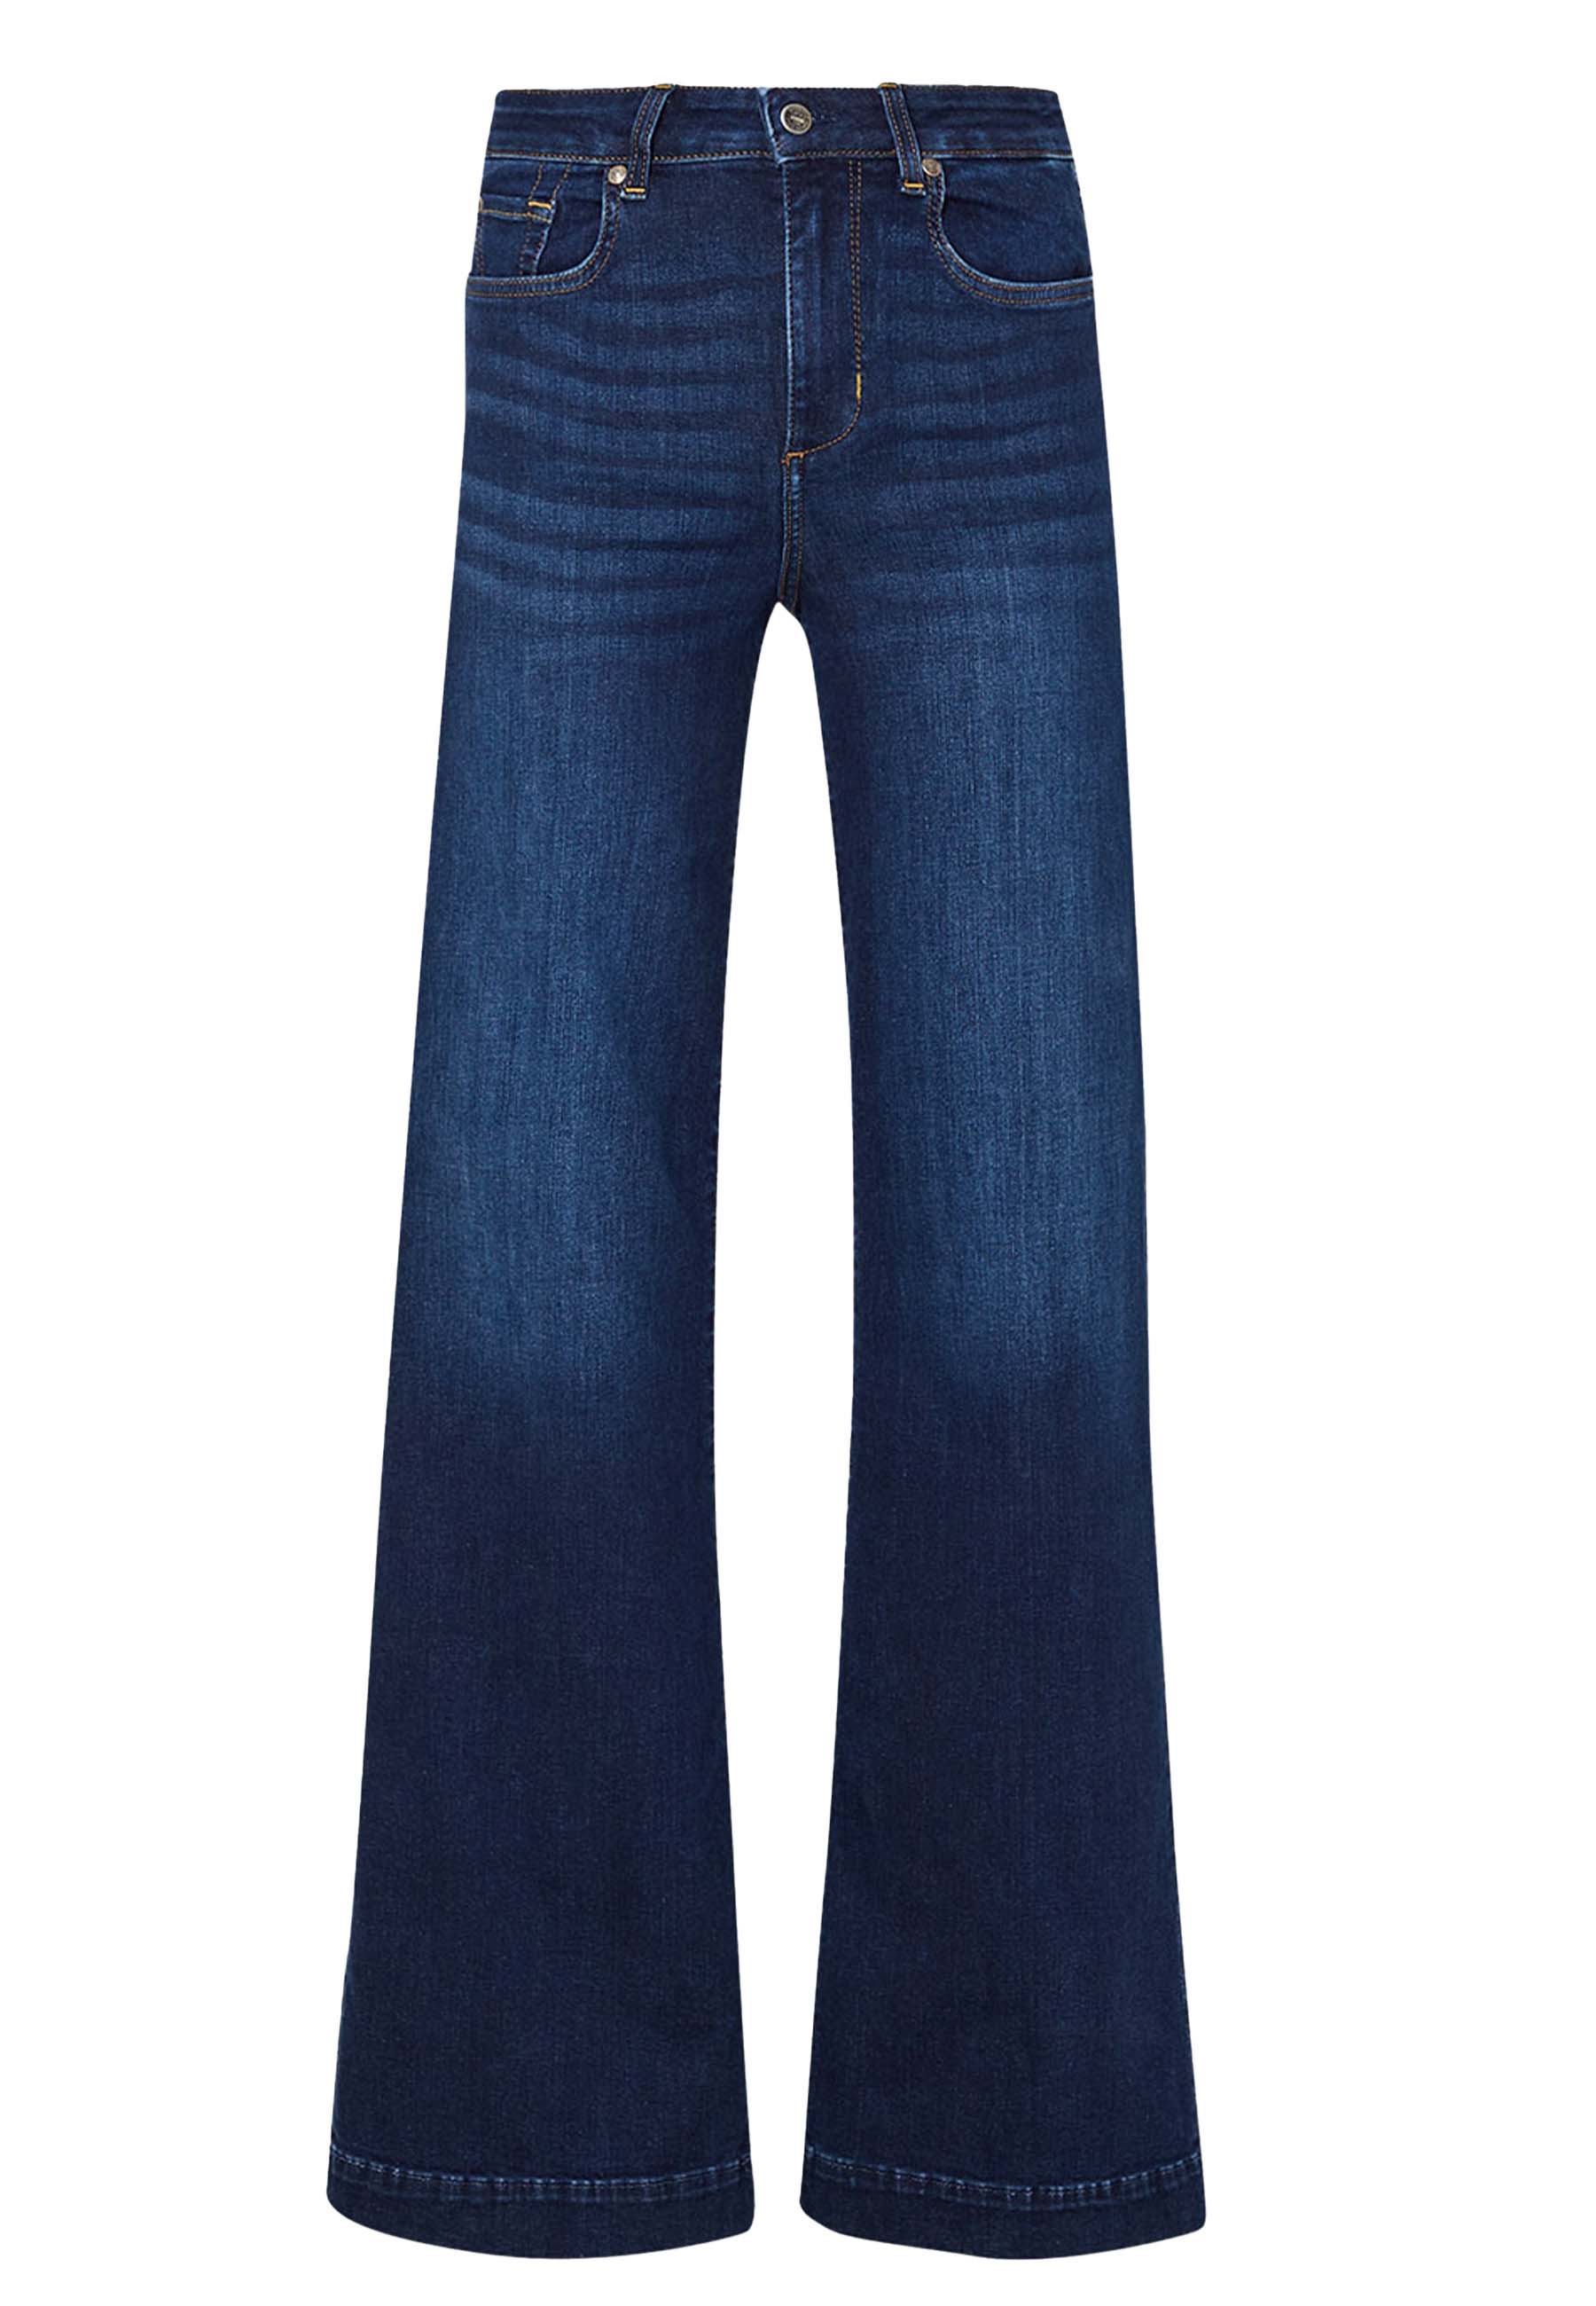 Liu Jo Jeans Jeans Katoen maat 29 flared jeans jeans